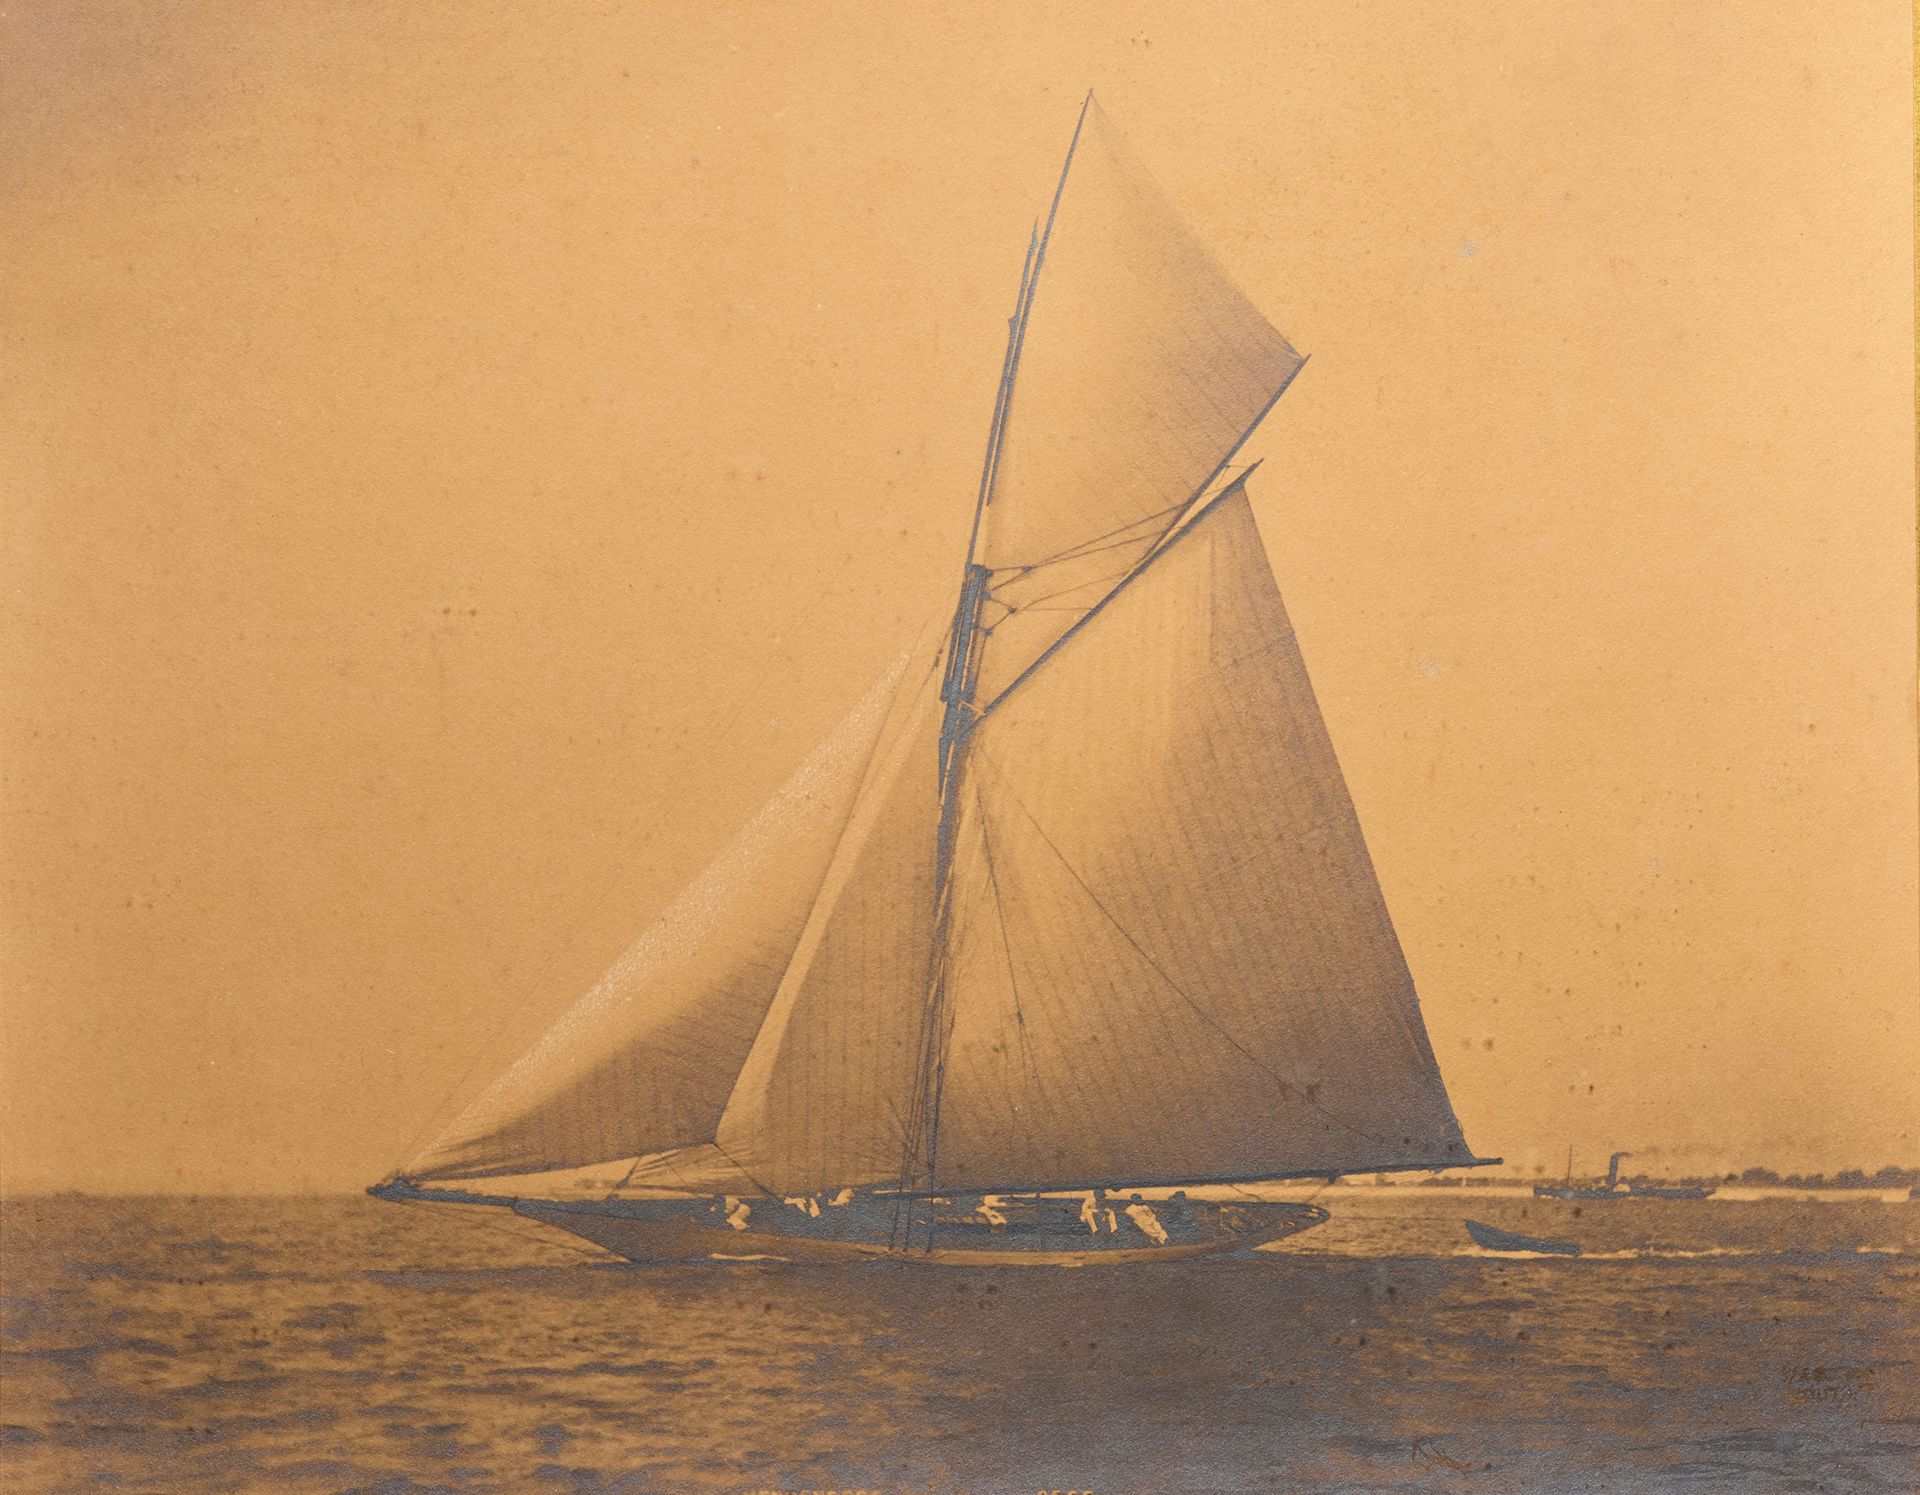 Null 照片
游艇VENDENE比赛
复古印刷品，标题和右下角签名（未破译）
英国，19世纪末。